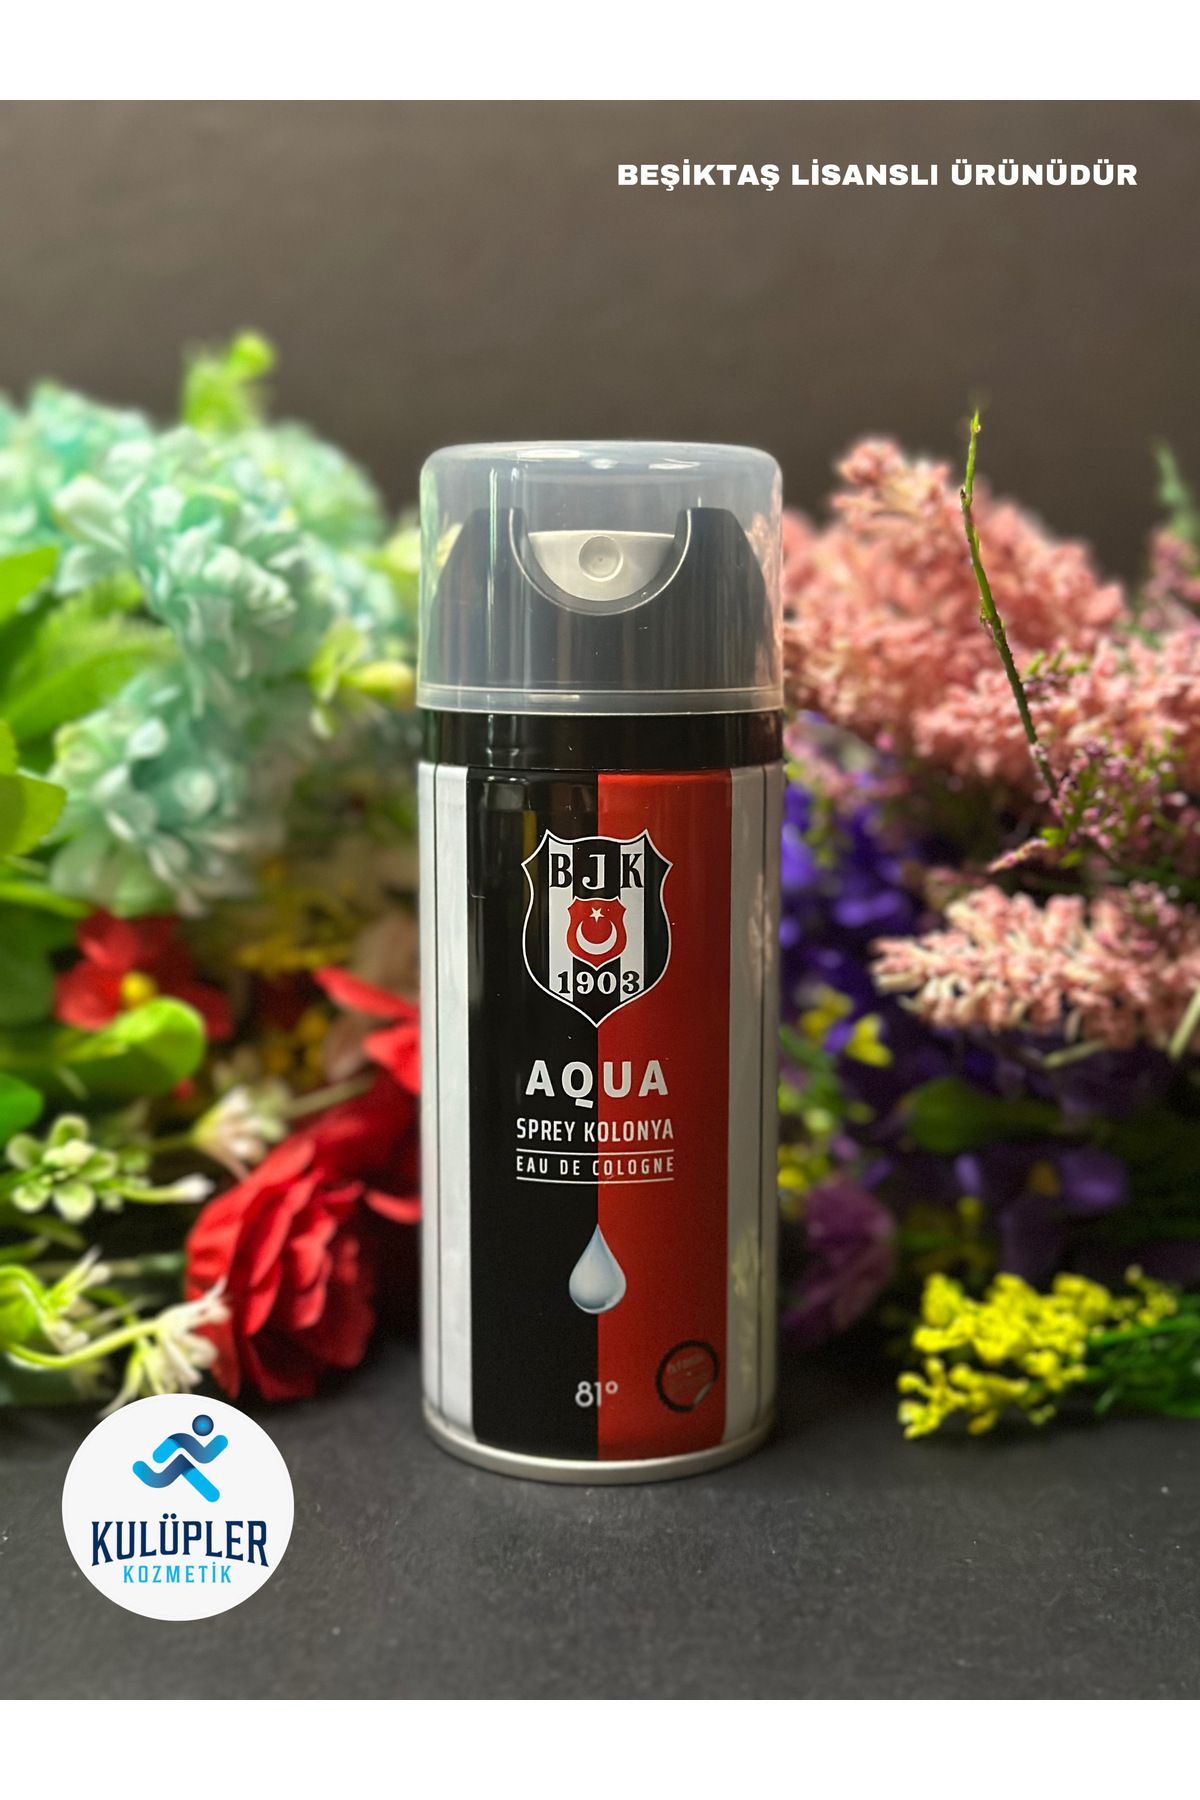 Beşiktaş Kolonya Sprey Aqua 150ml/ Lisanslı Ürünüdür